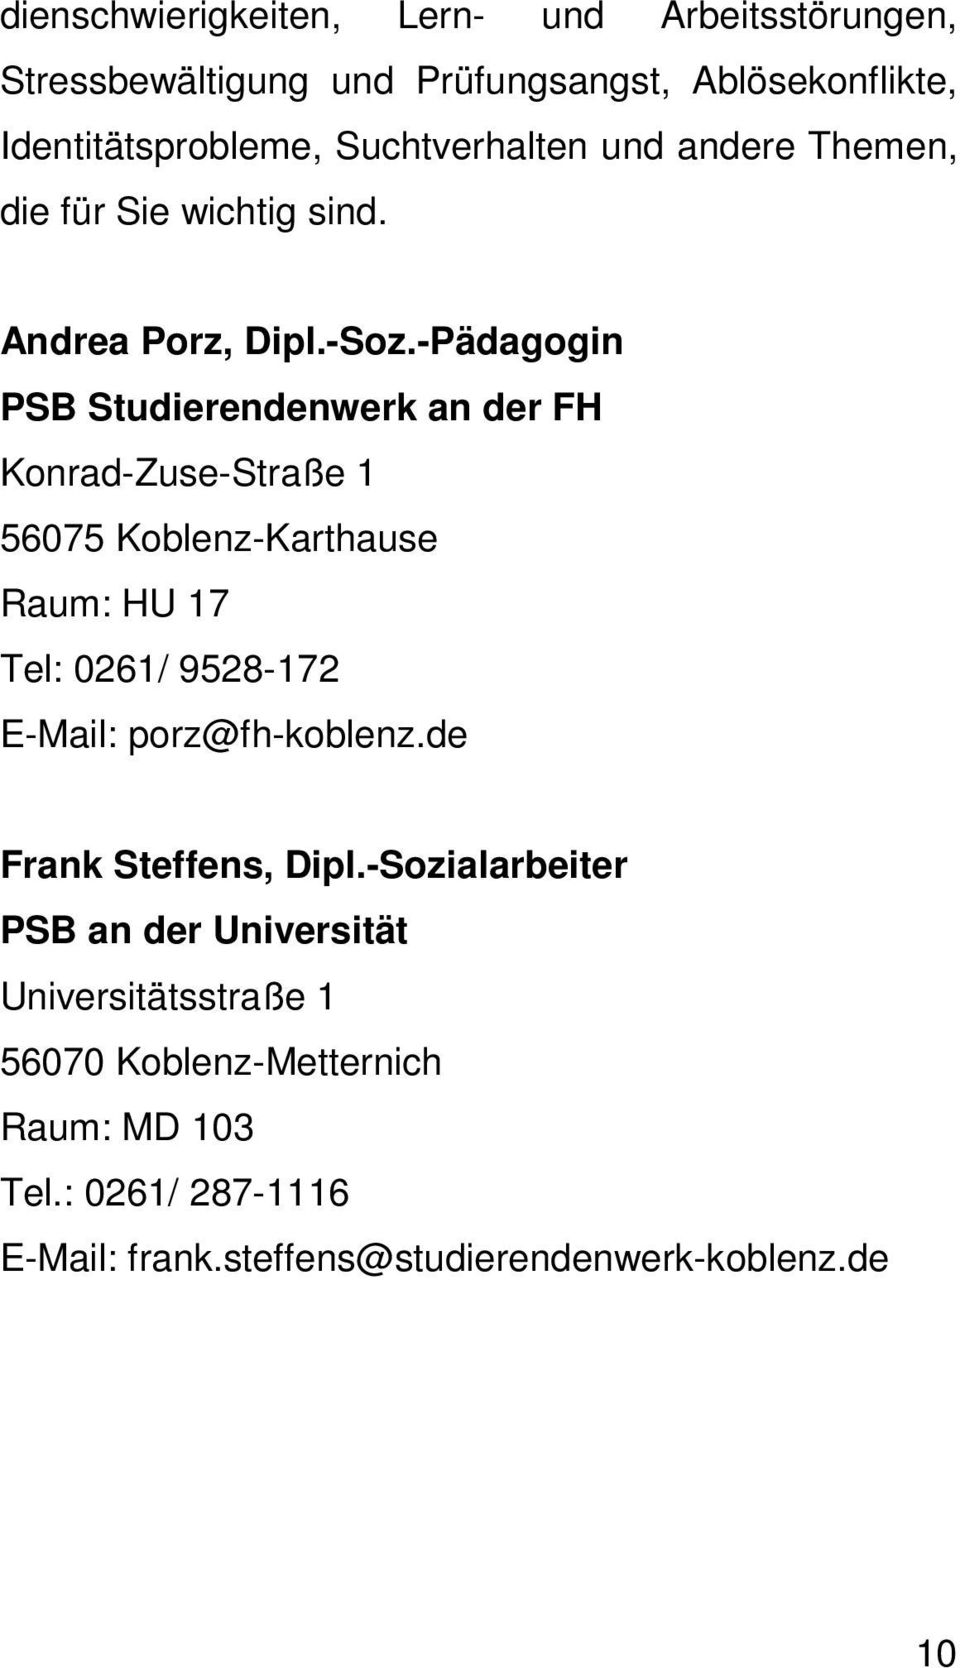 -Pädagogin PSB Studierendenwerk an der FH Konrad-Zuse-Straße 1 56075 Koblenz-Karthause Raum: HU 17 Tel: 0261/ 9528-172 E-Mail: